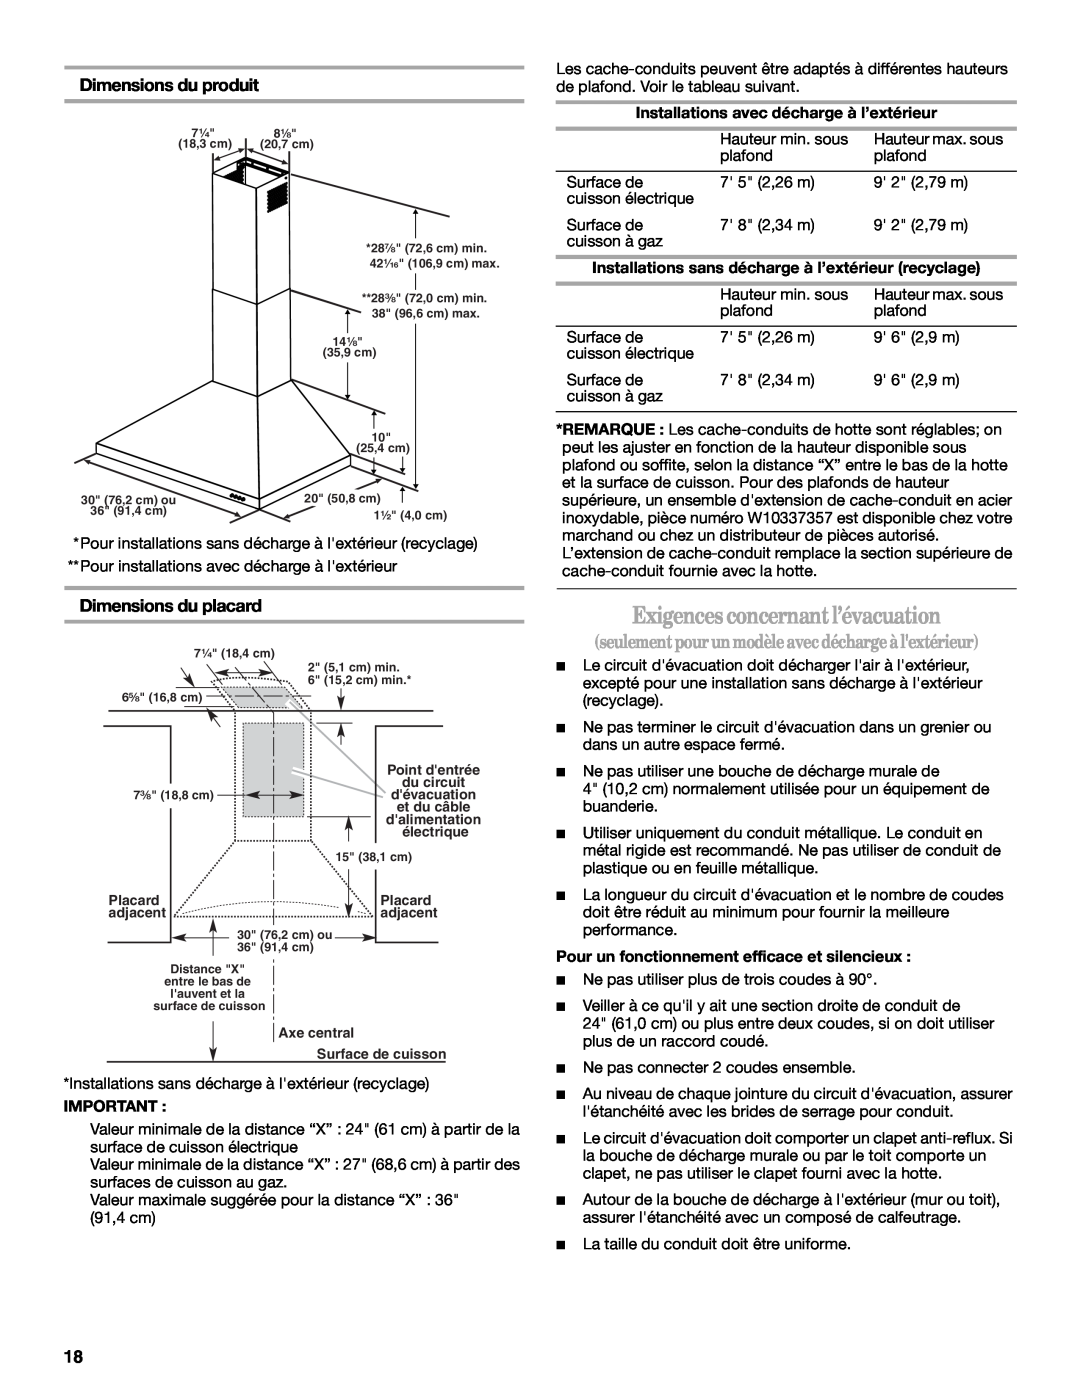 Whirlpool LI3Y3B Exigencesconcernantl’évacuation, seulementpourunmodèle avecdéchargeàlextérieur, Dimensions du produit 